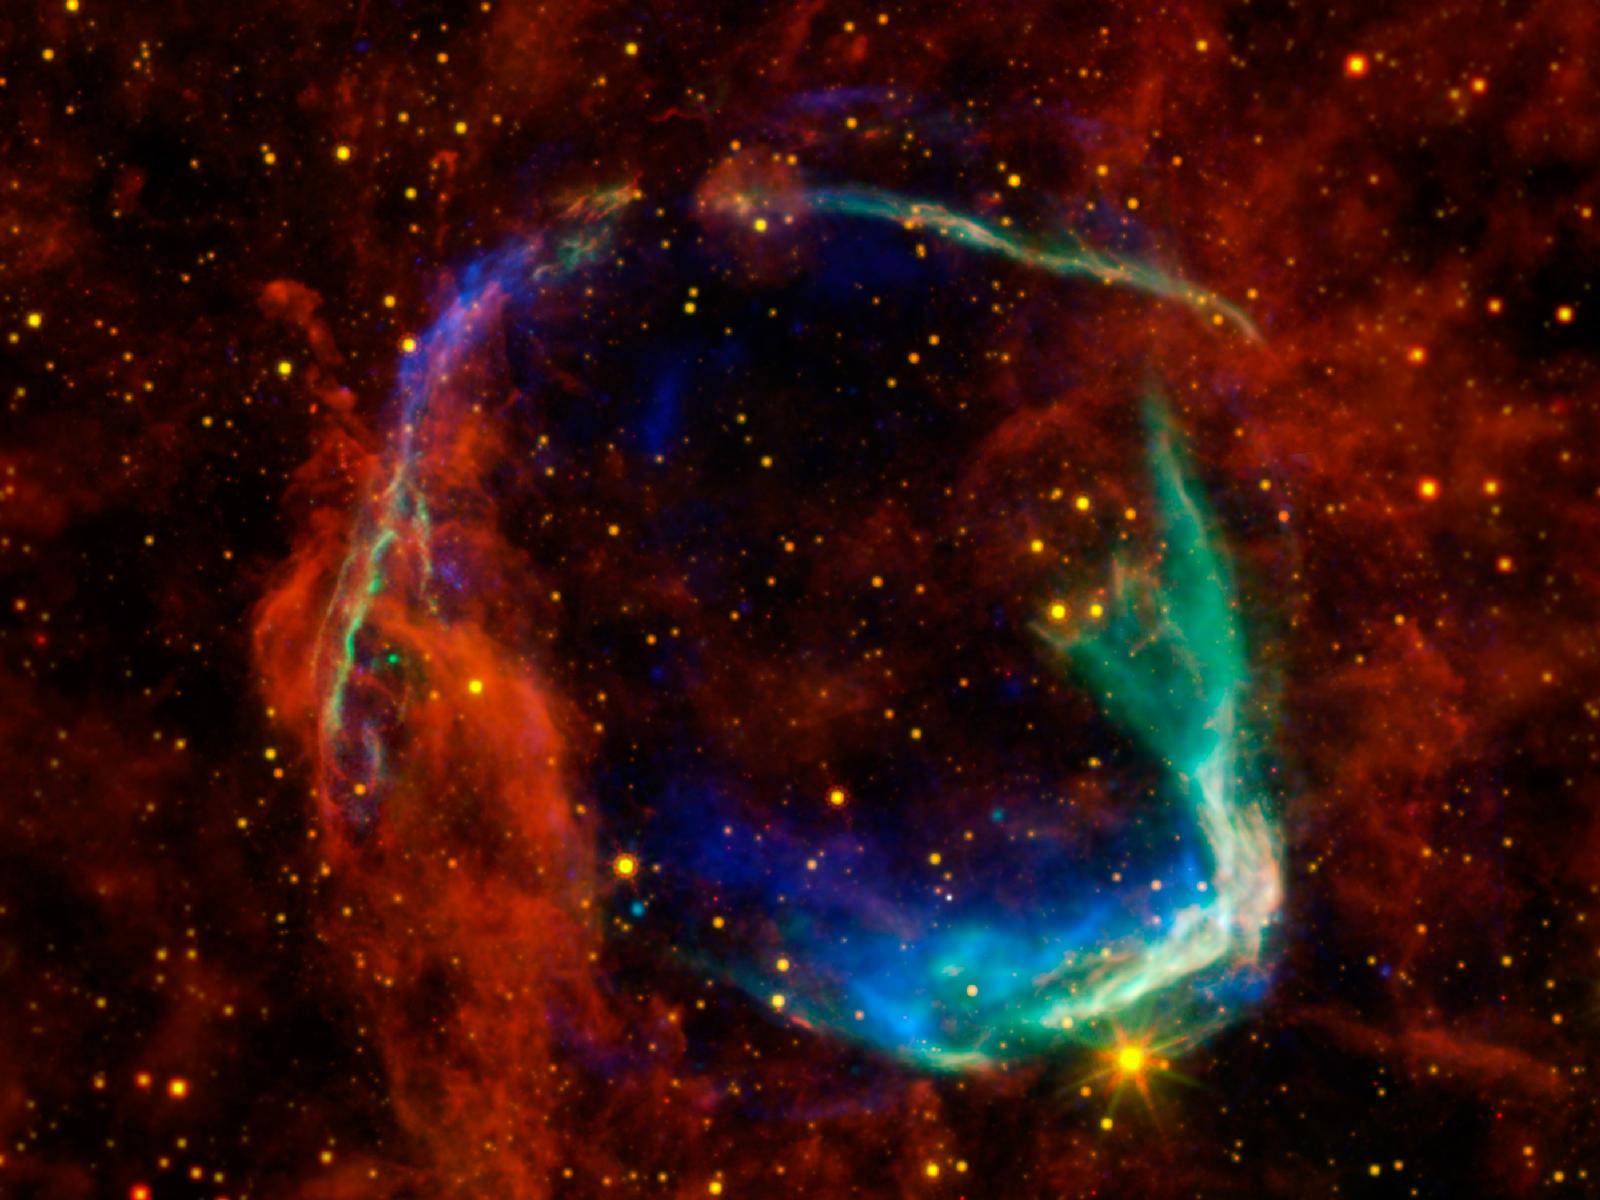 Cette image combine des données dans différentes bandes spectrales provenant de quatre télescopes spatiaux différents pour créer une vue des restes d'une supernova, appelée RCW 86, observée par les Chinois en 185. Les observations dans le domaine des rayons X de XMM-Newton (Esa) et de Chandra (Nasa) ont été combinées pour donner les détails de couleur bleu et vert. Les rayons X montrent le gaz interstellaire chauffé à des millions de degrés par le passage de l'onde de choc de la supernova. Les données infrarouges du télescope spatial Spitzer, ainsi que de Wise, sont représentées en jaune et en rouge. Elles montrent la poussière rayonnant à une température de plusieurs centaines de degrés en dessous de zéro, ce qui est plutôt chaud par comparaison à la poussière dans notre Voie lactée. © Nasa/Esa/JPL-Caltech/UCLA/CXC/SAO